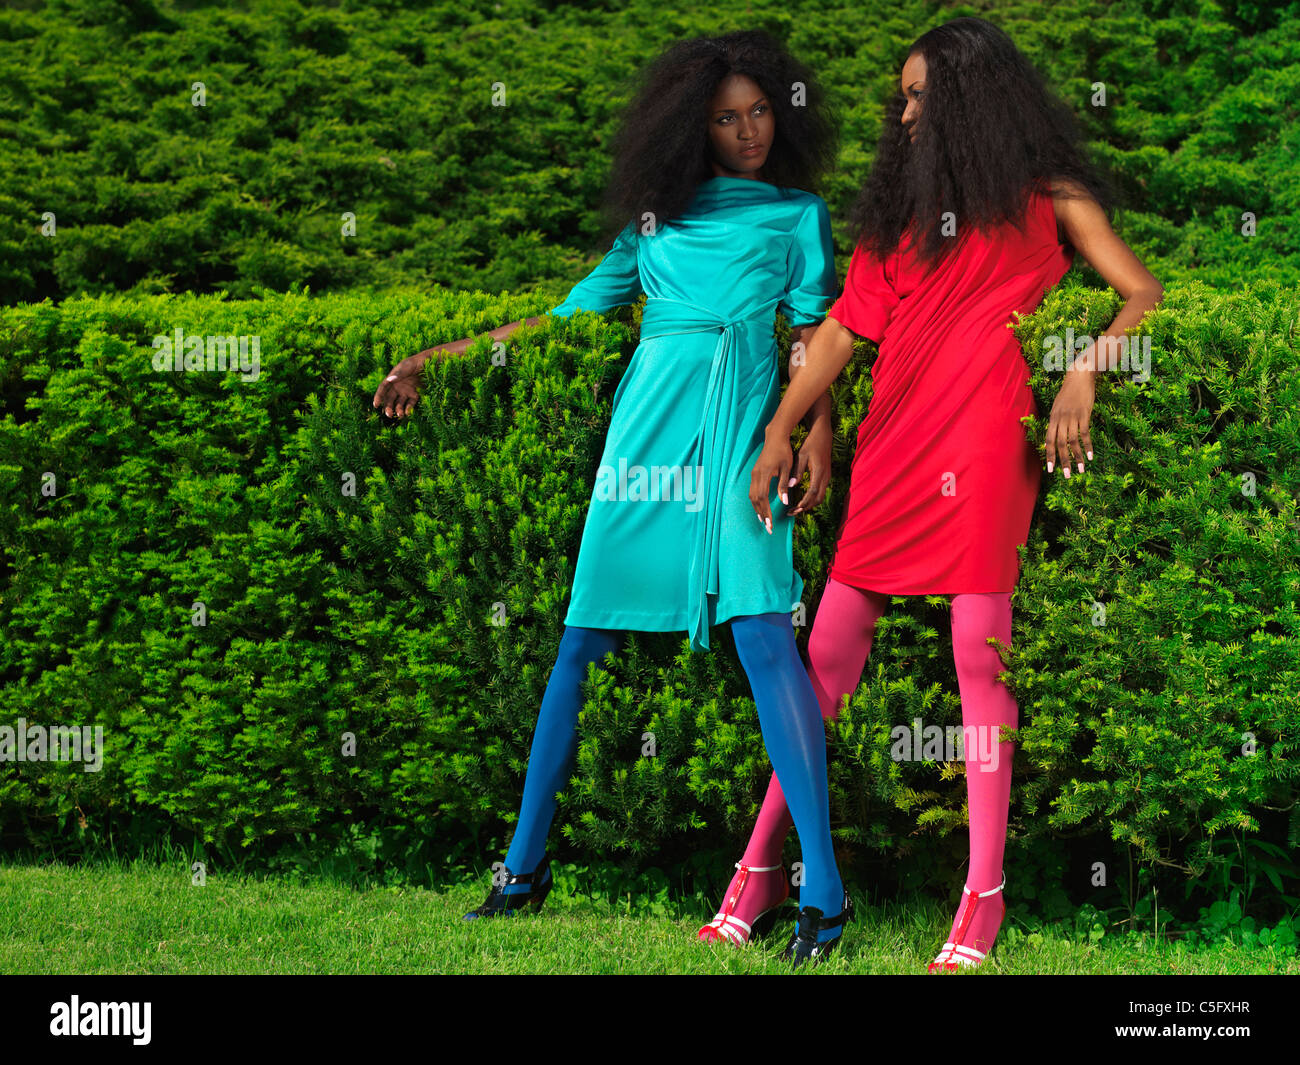 Licence disponible à MaximImages.com - deux belles jeunes femmes portant des couleurs vives habillées dans un parc vert Banque D'Images